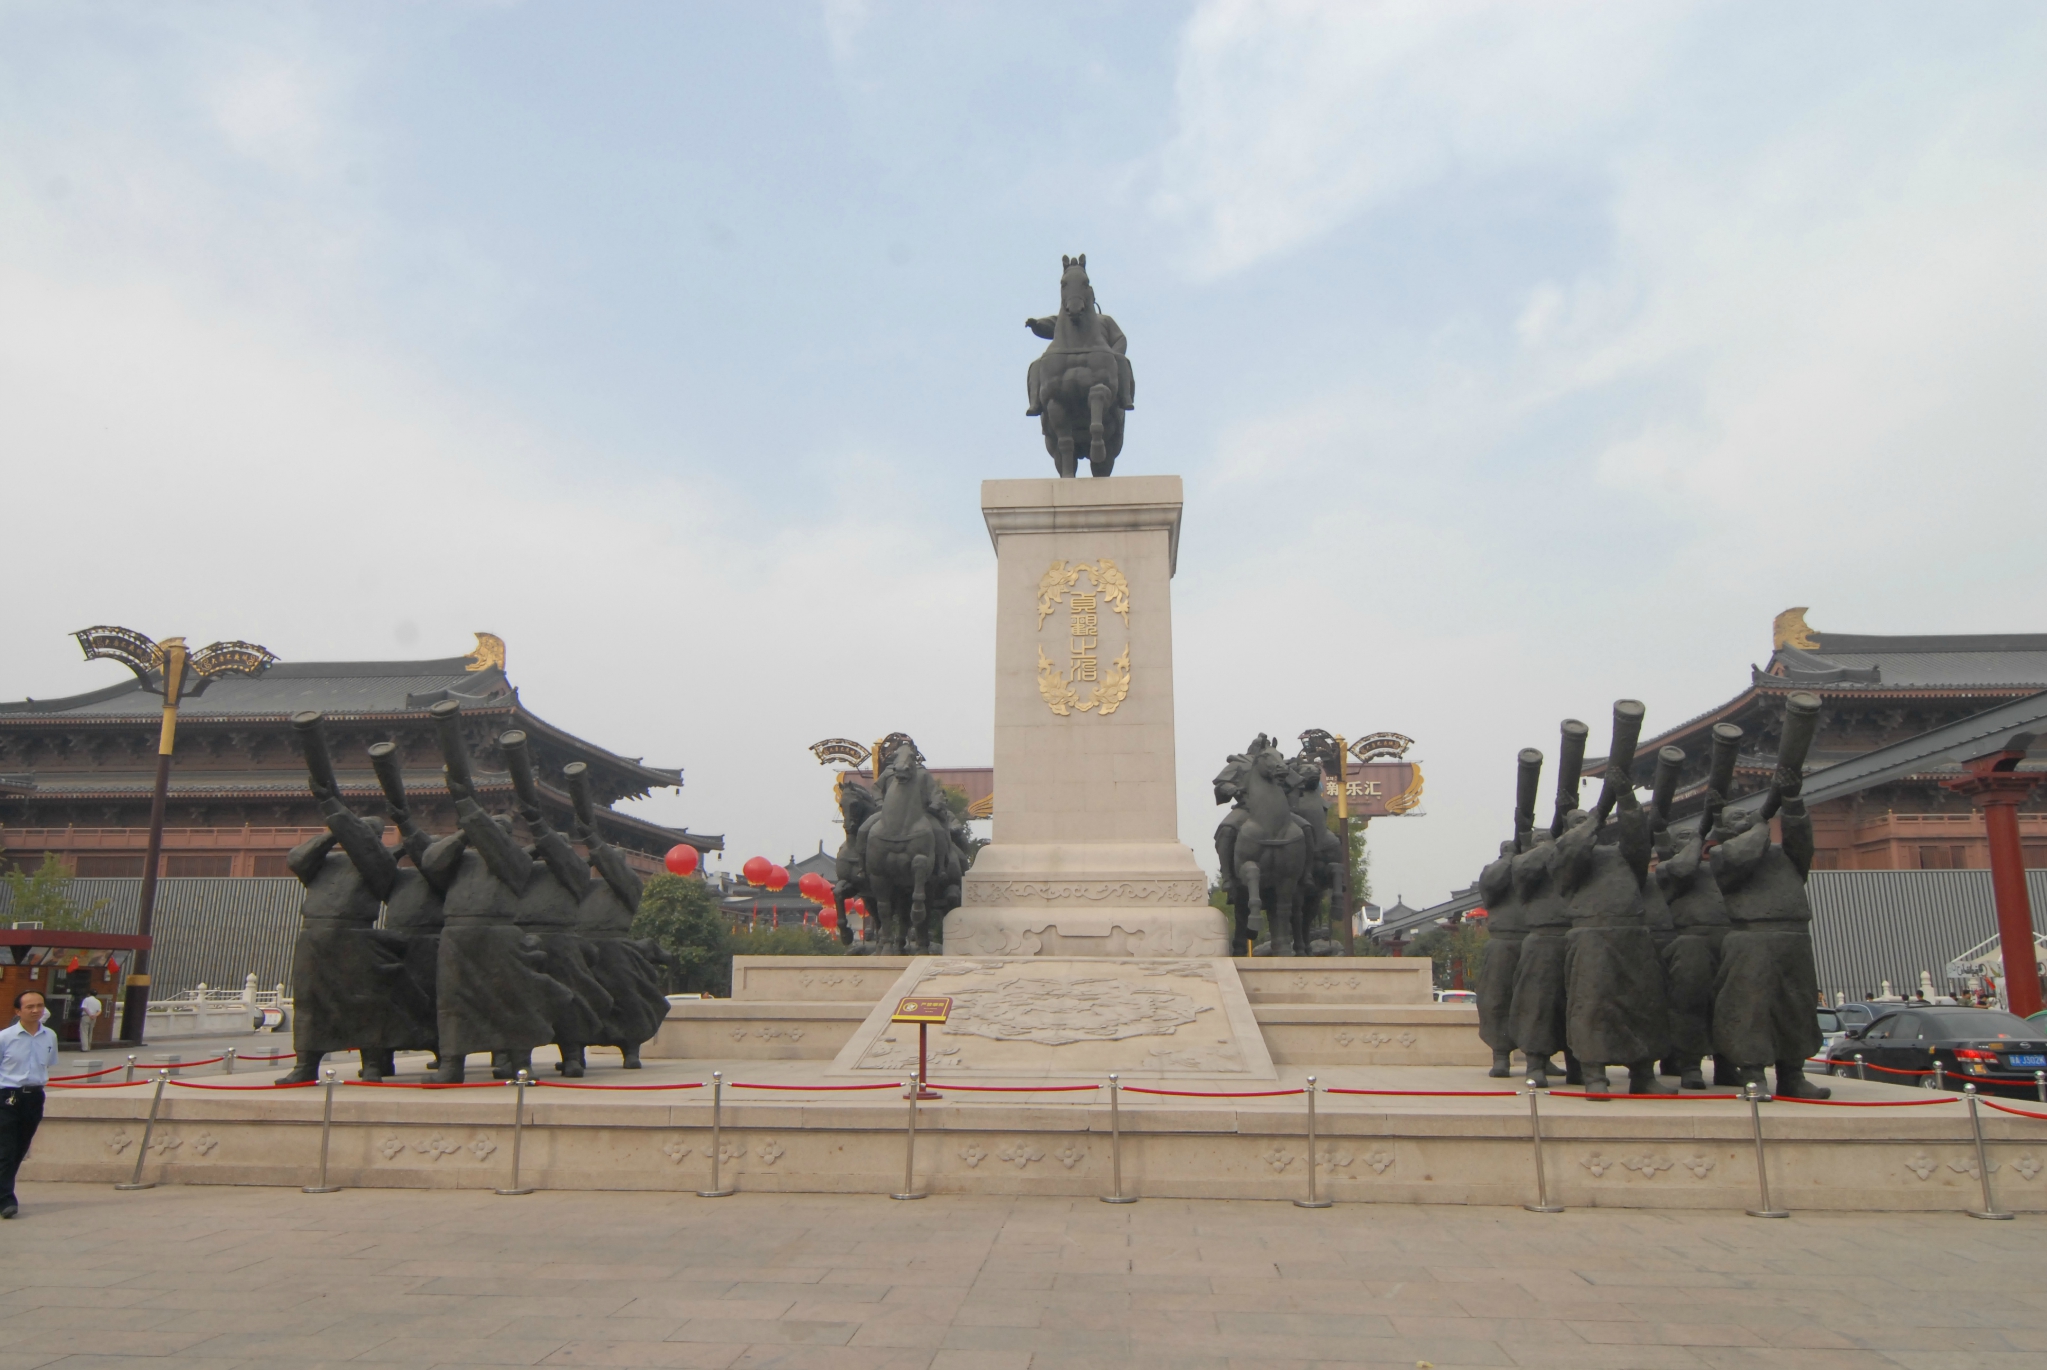 是唐太宗李世民的年号而贞观之治是指唐朝初期的太平盛世所以该广场